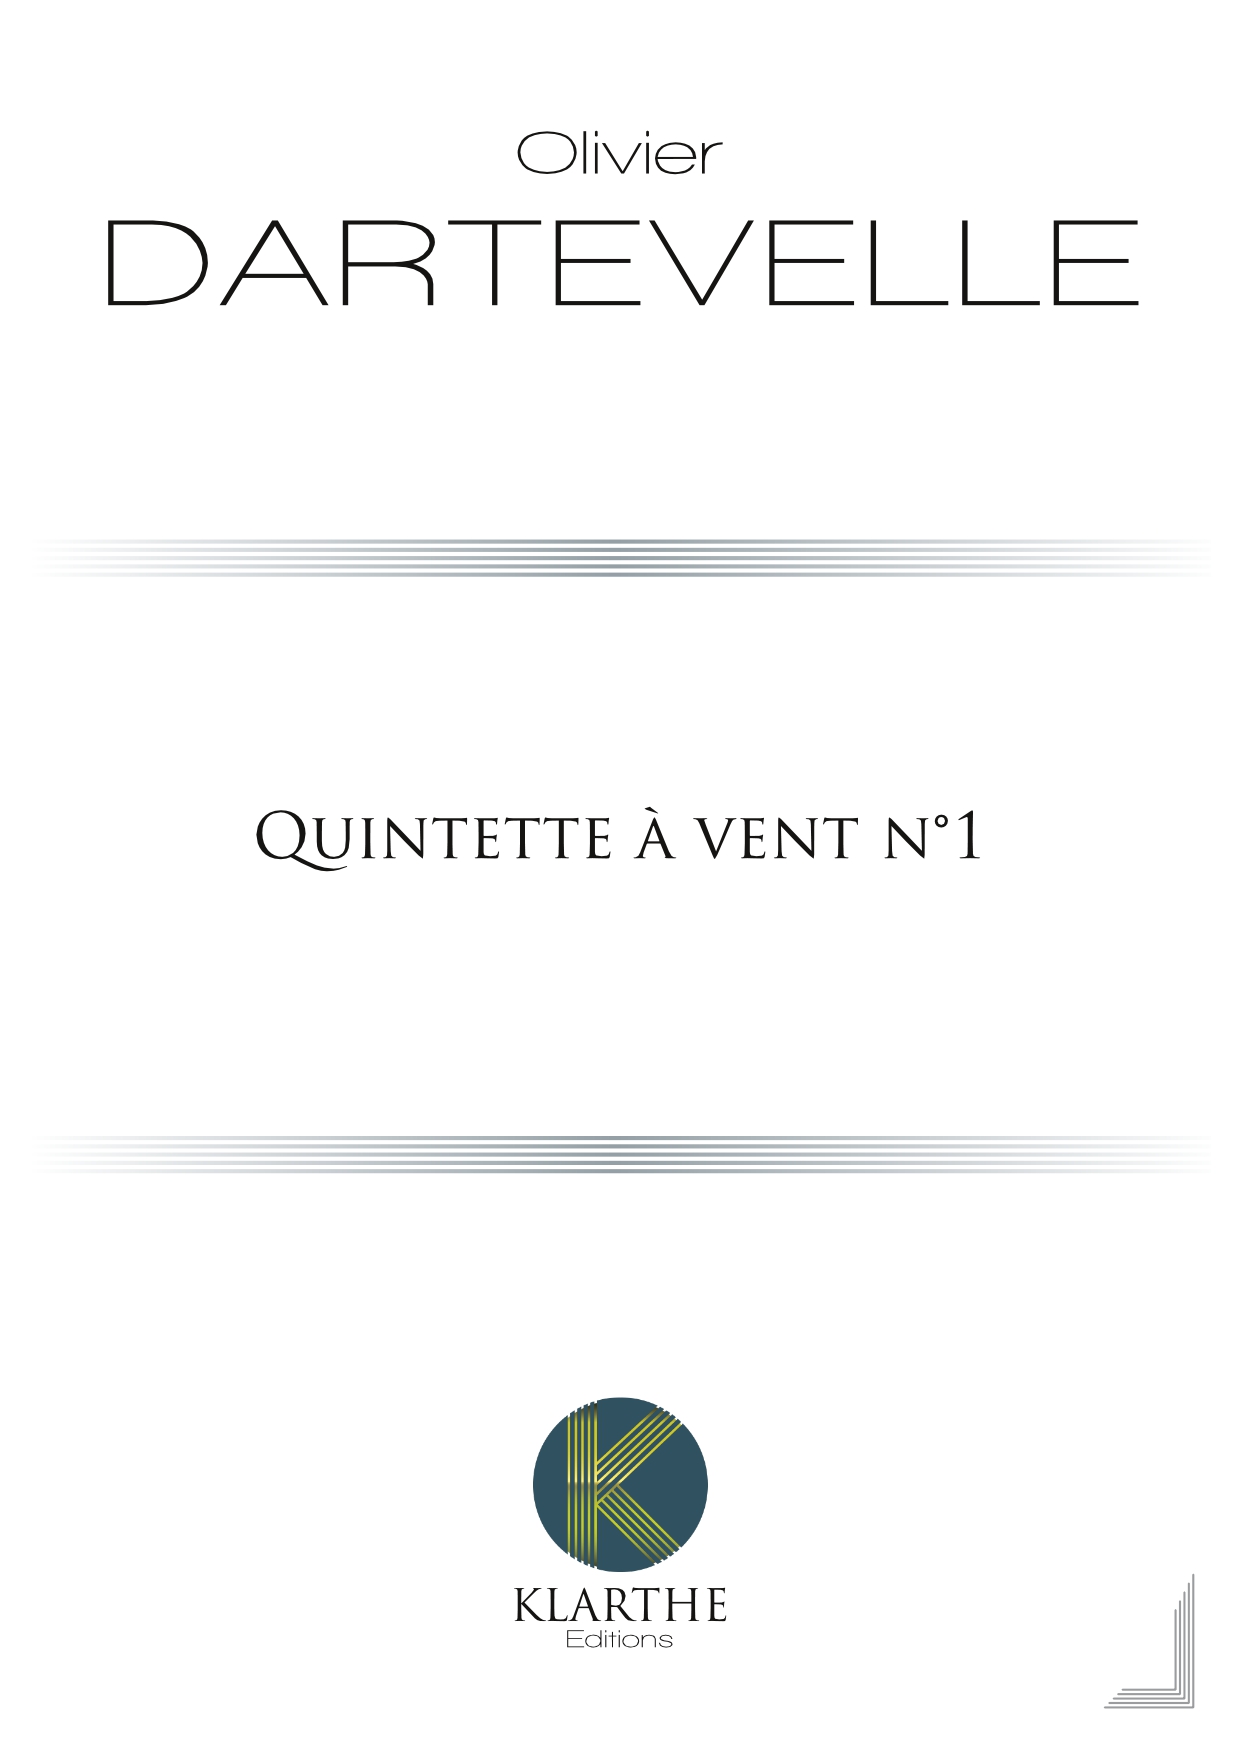 Quintette n°1 (DARTEVELLE OLIVIER)